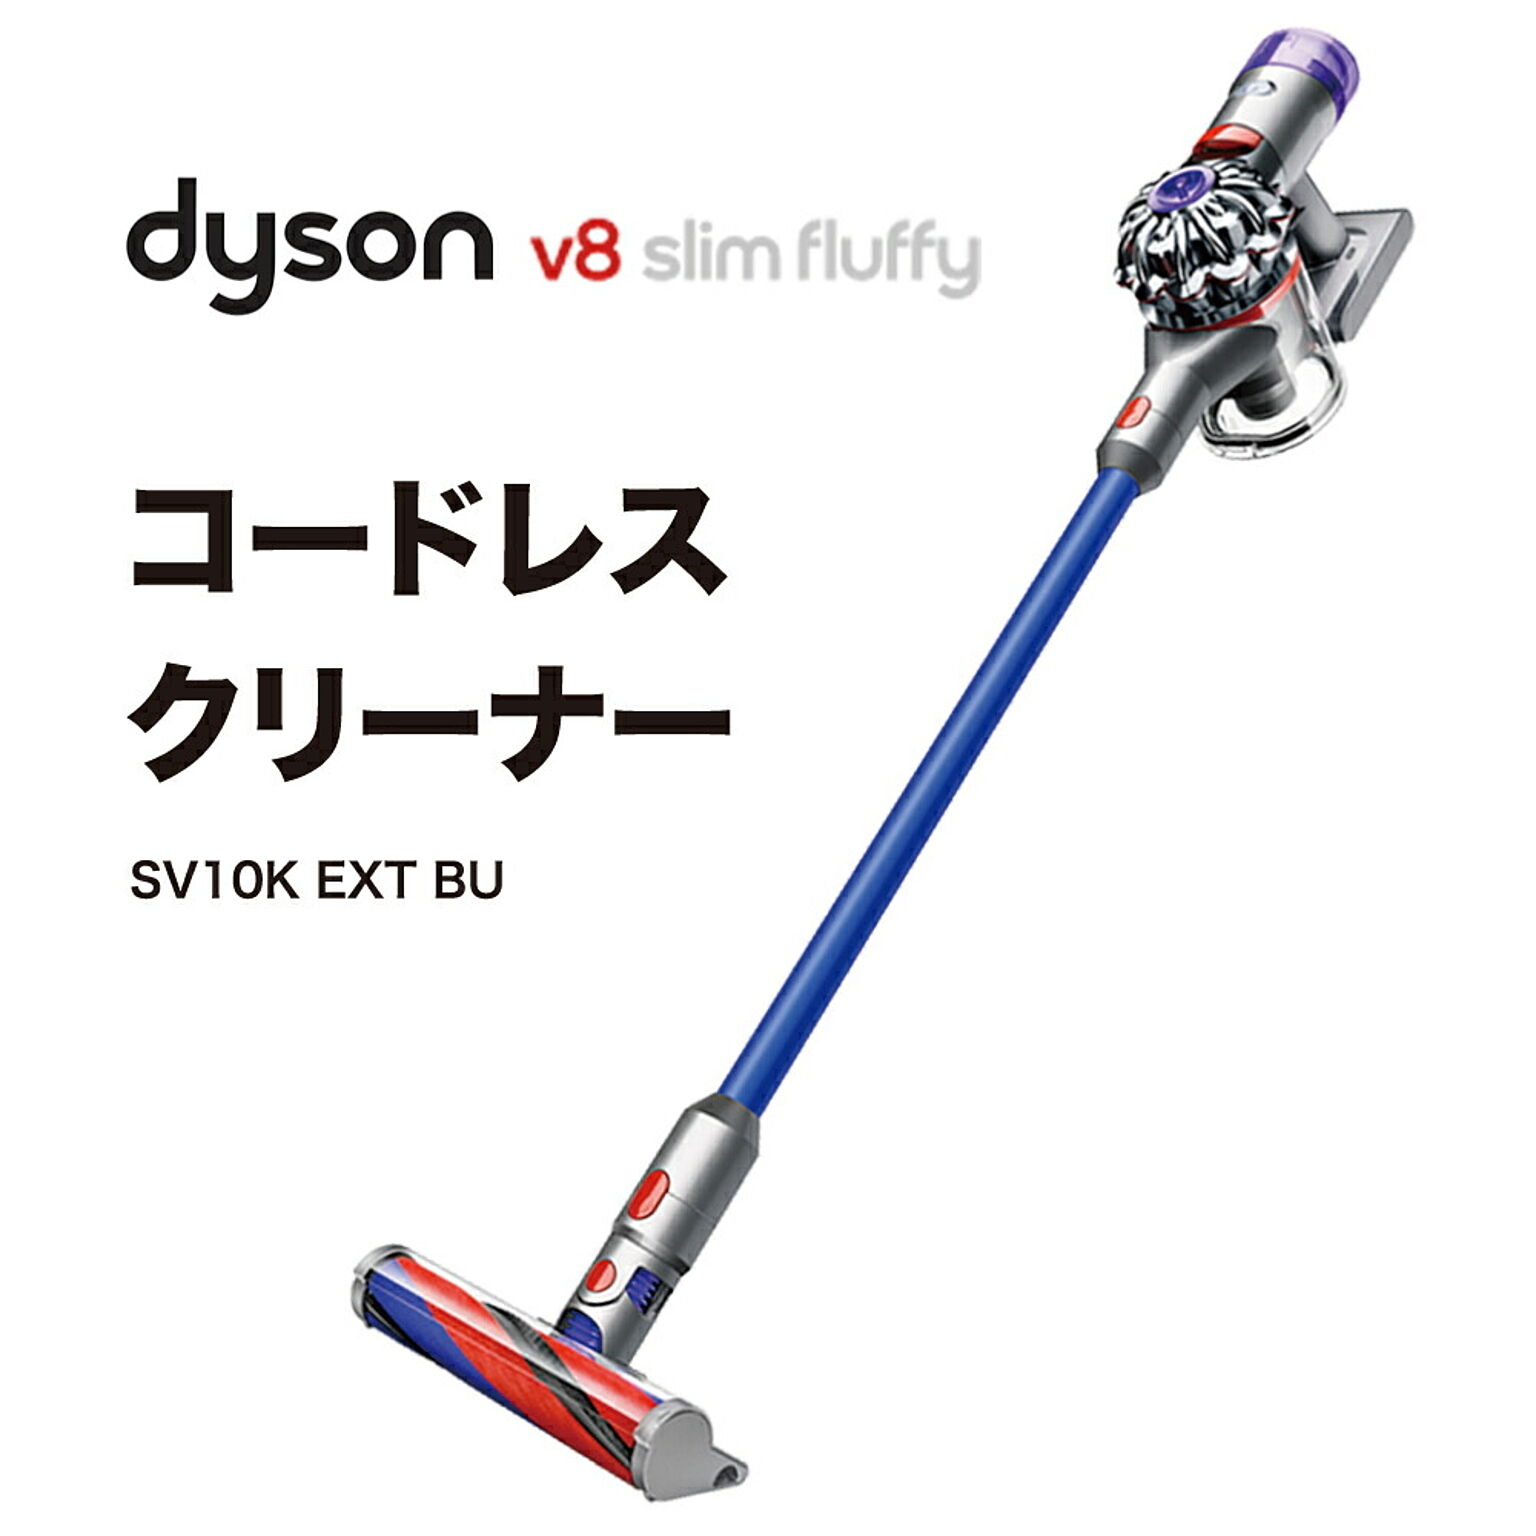 ダイソン V8 Slim Fluffy Extra コードレス 掃除機 Dyson SV10KEXTBU